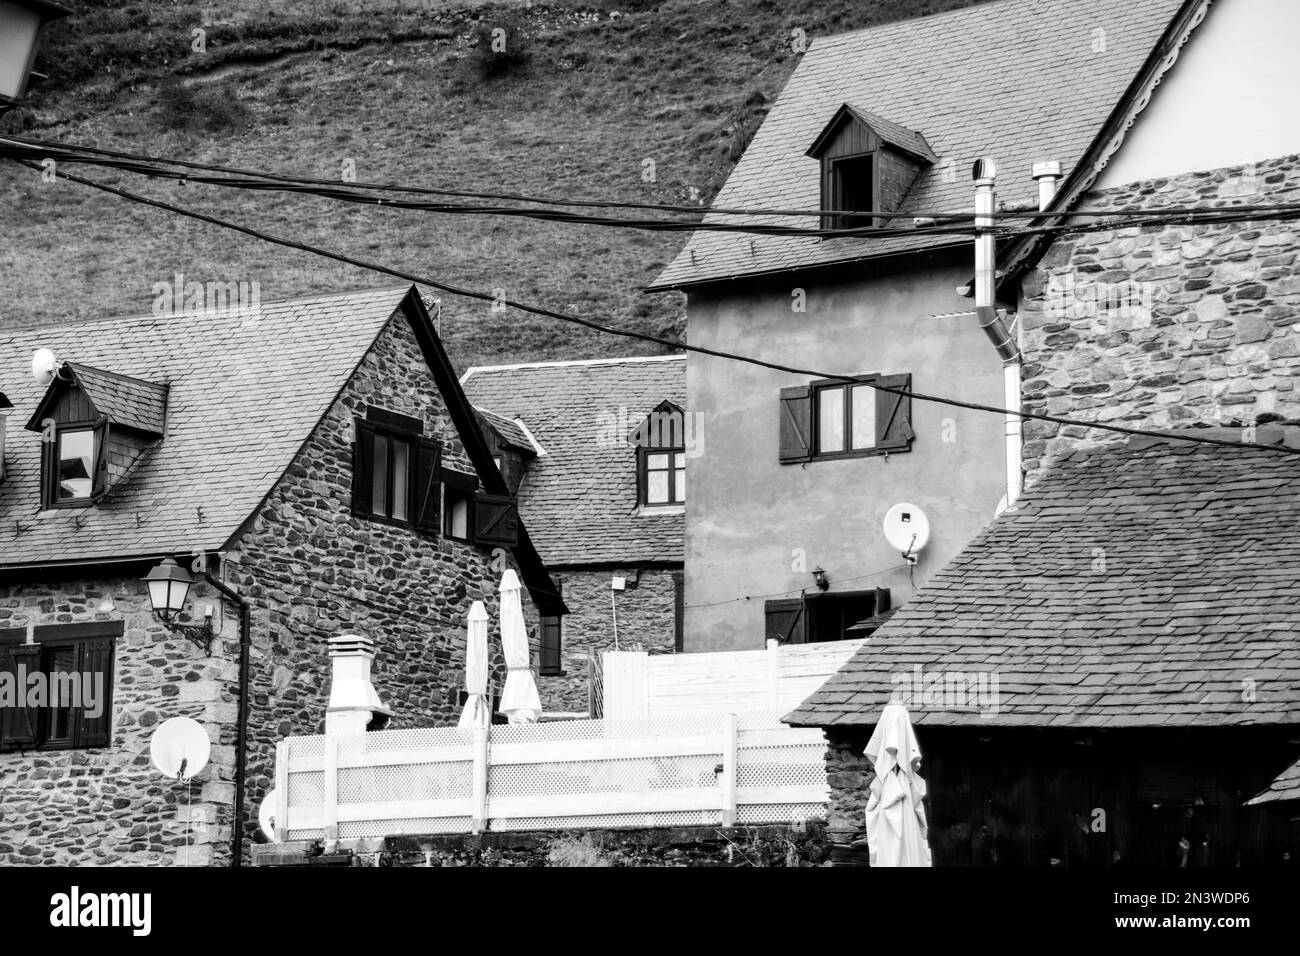 Un cliché noir et blanc des toits de maisons à queue dans une ville, frais pour le fond Banque D'Images